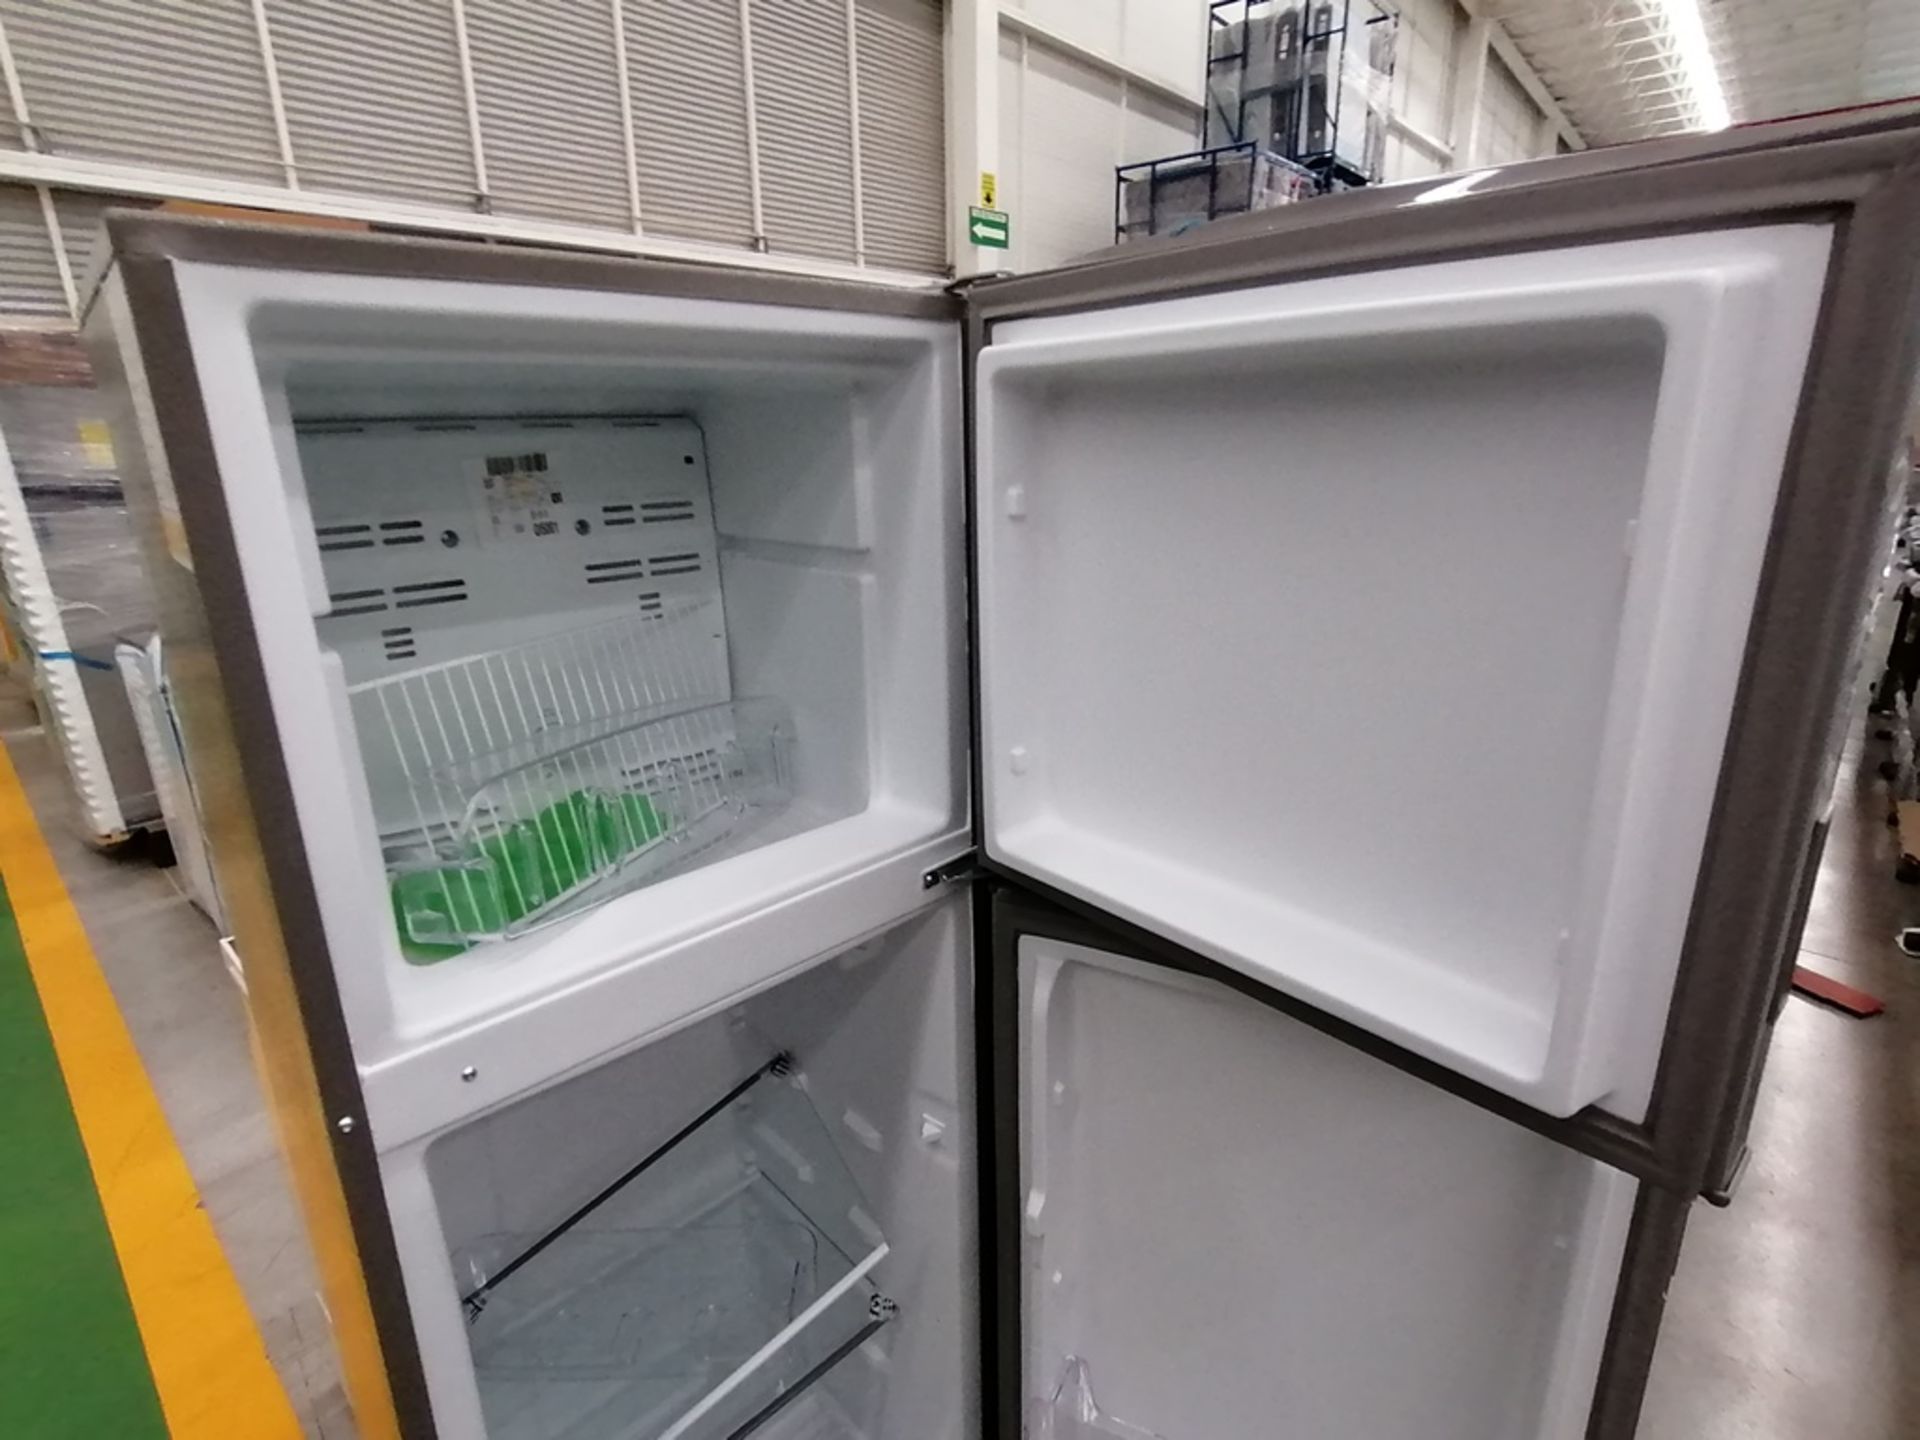 Lote de 2 refrigeradores incluye: 1 Refrigerador, Marca Acros, Modelo AT9007G, Serie VRA4332547, Co - Image 4 of 14